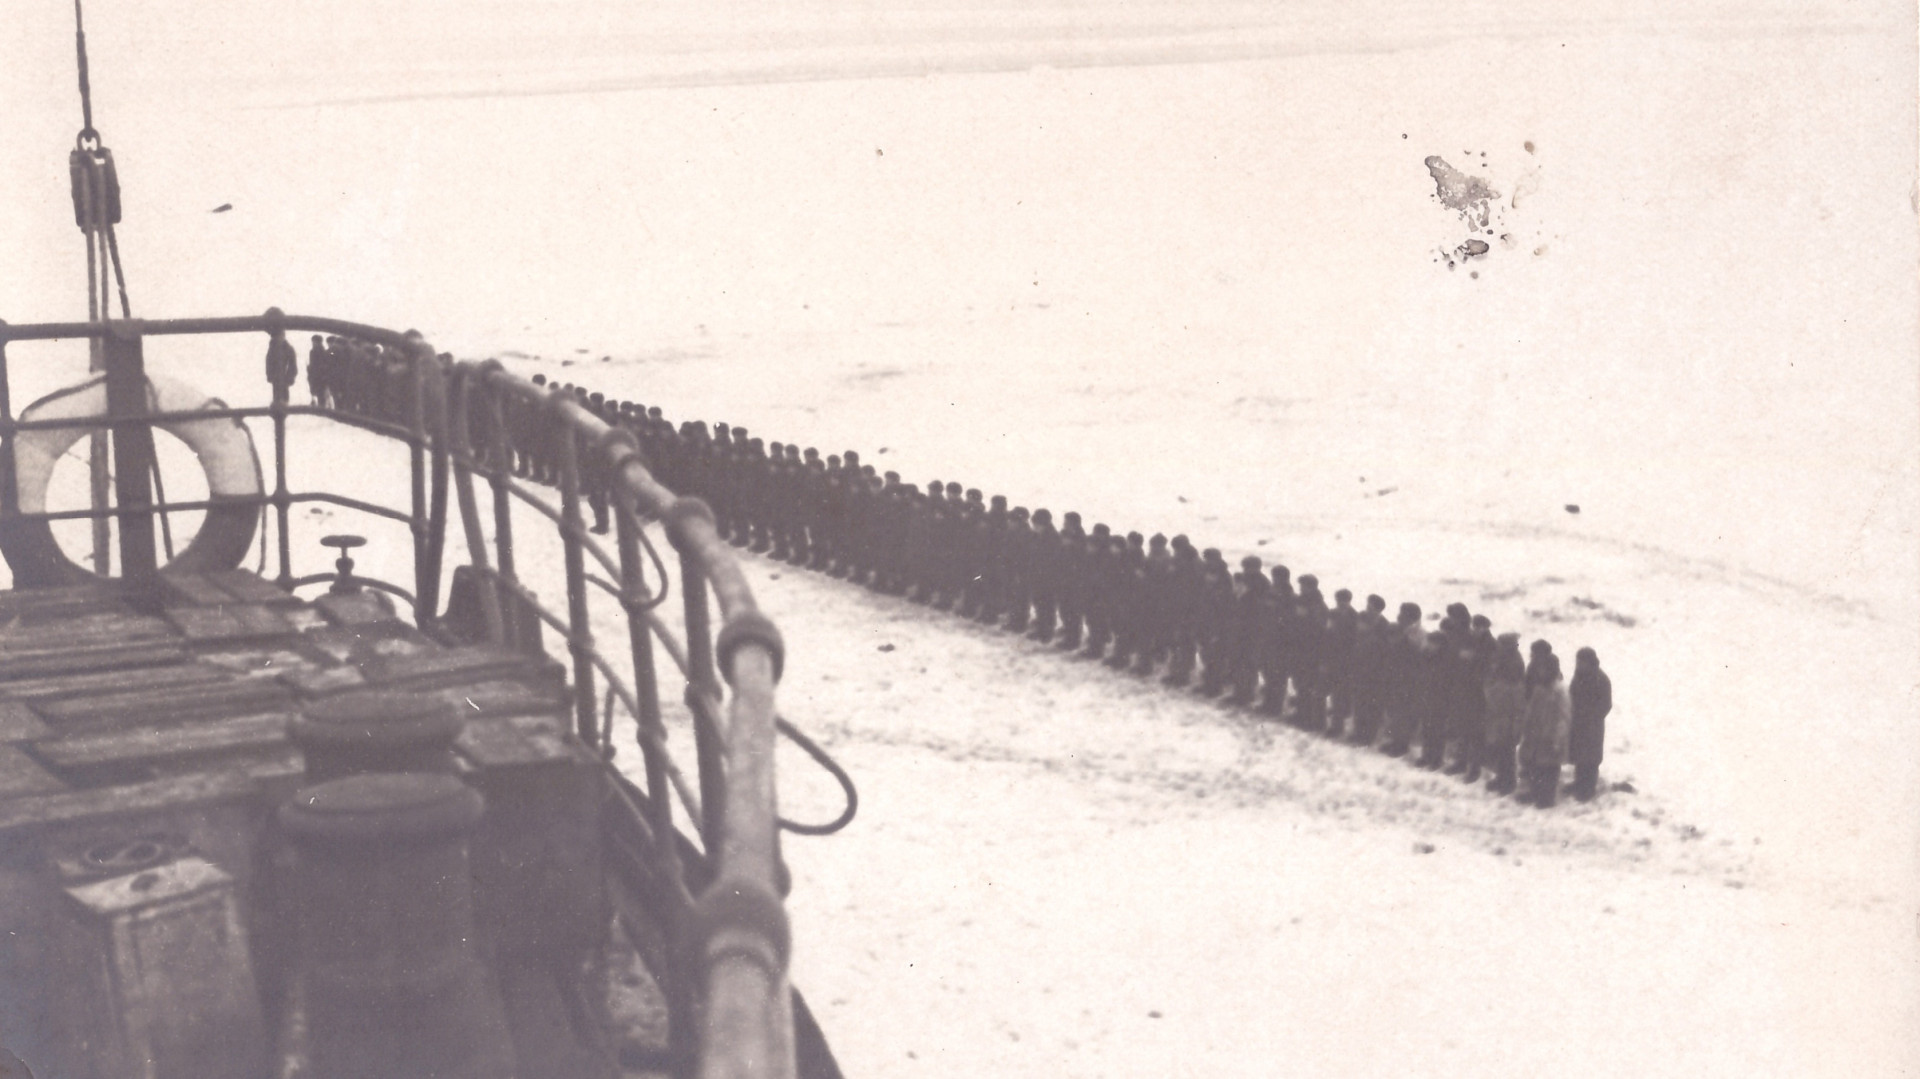 Фотография, сделанная с борта ледокола «Смоленск», пришедшего на спасение «челюскинцев». На льду шеренга людей, более 100 человек. Фото: https://goskatalog.ru